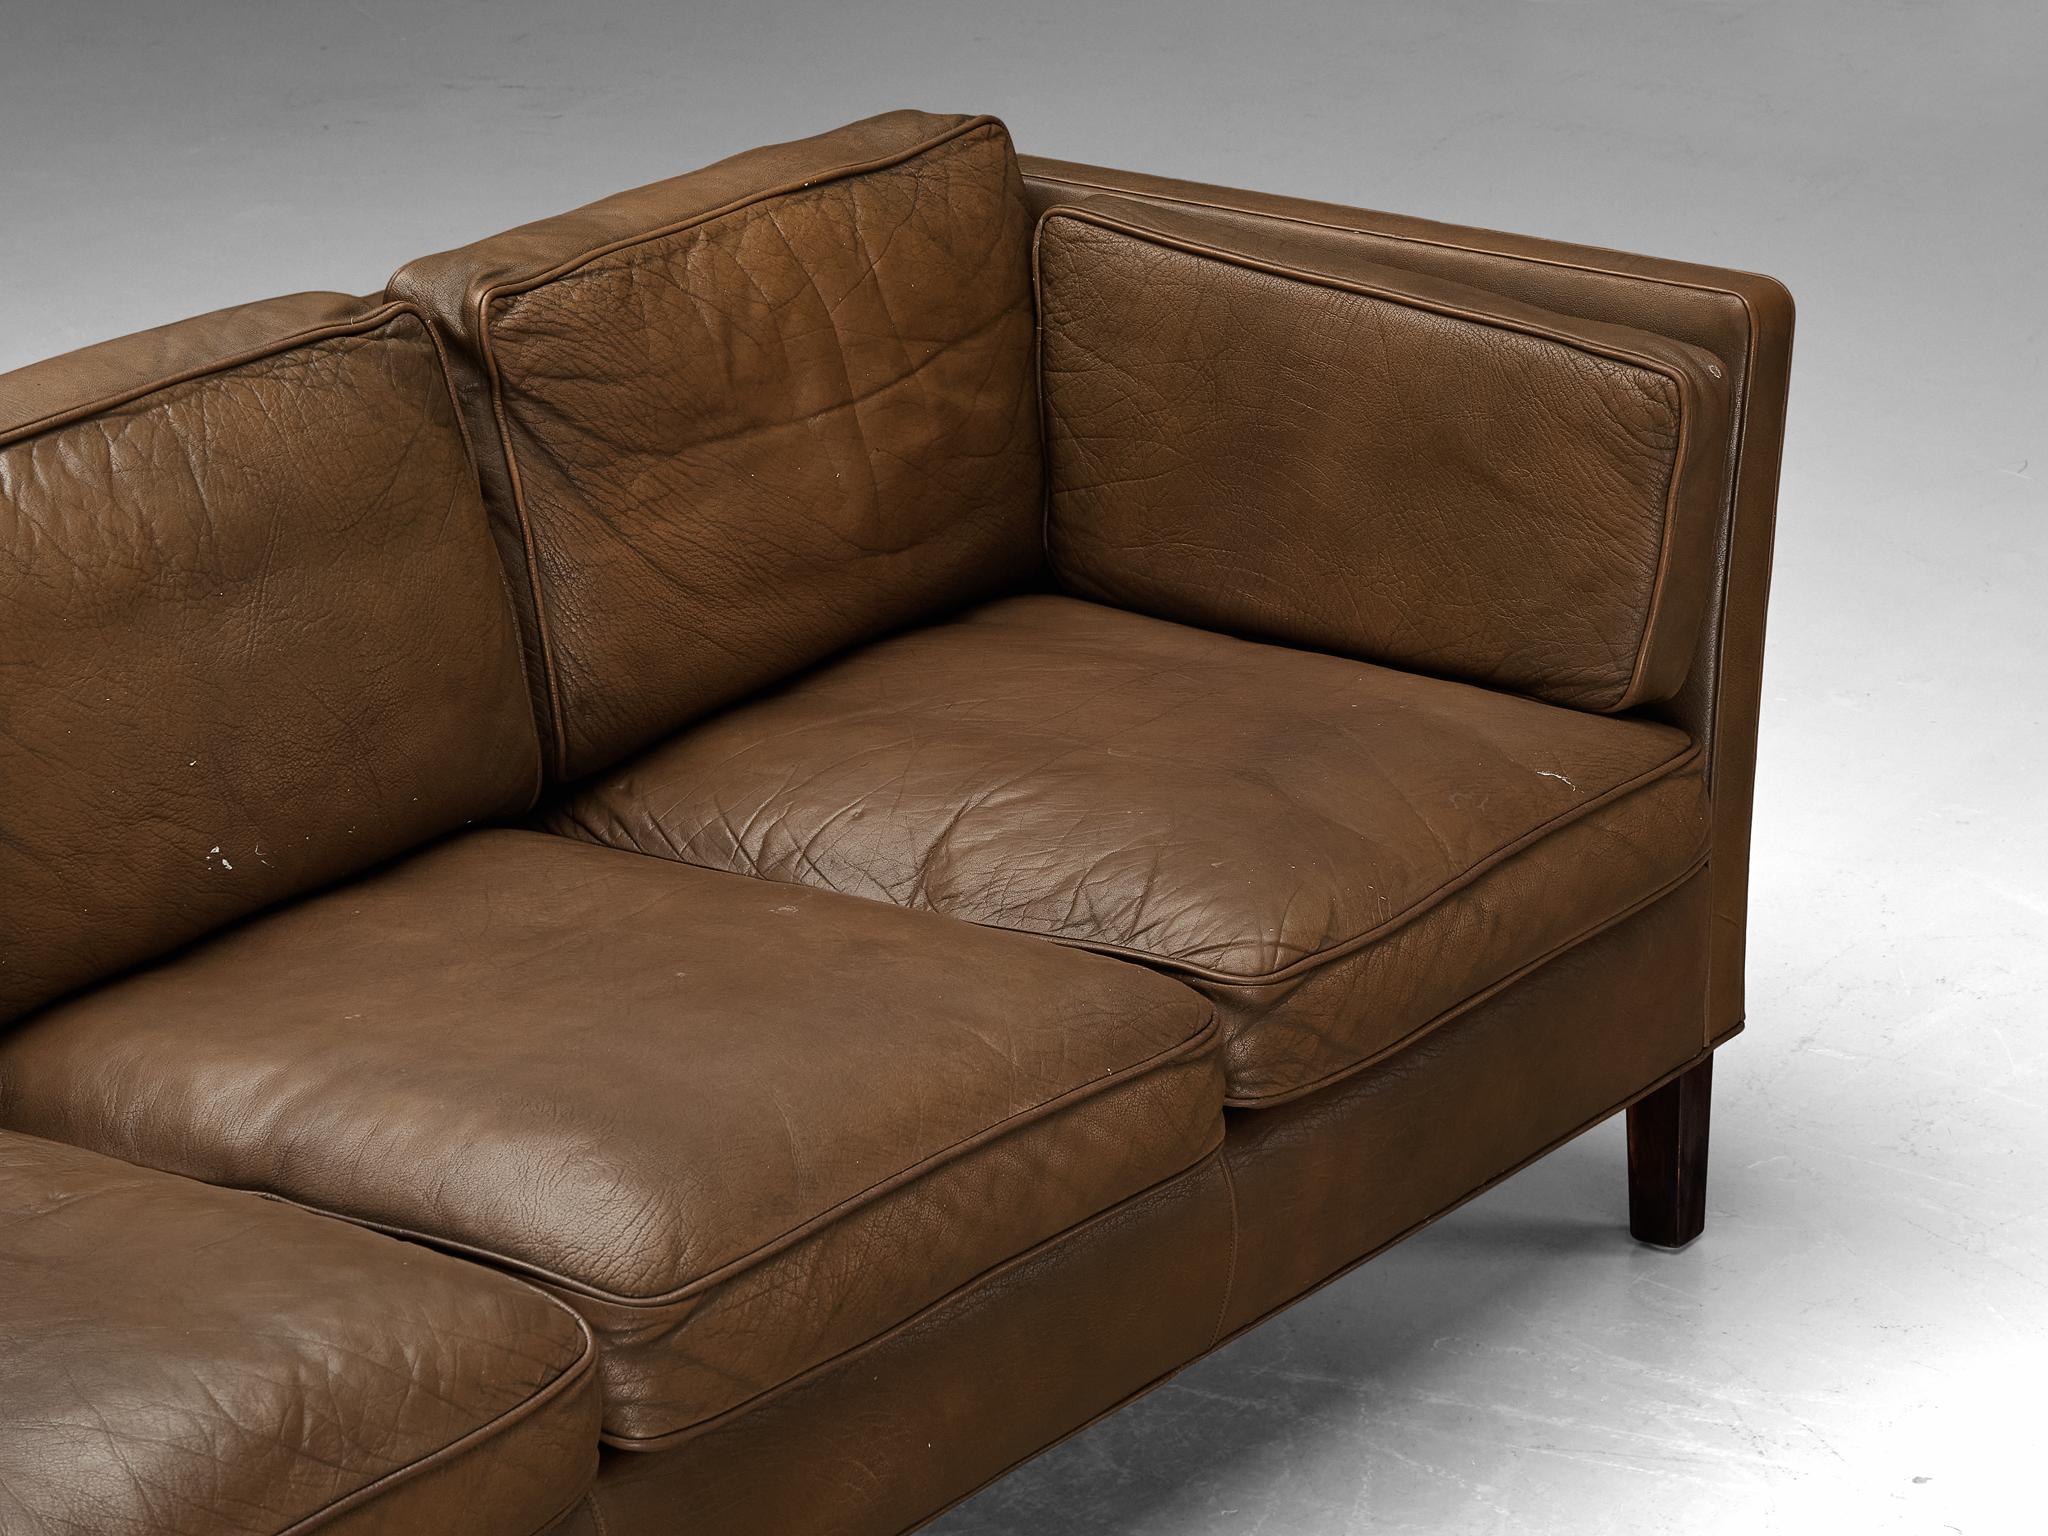 Danish Sofa in Brown Leather